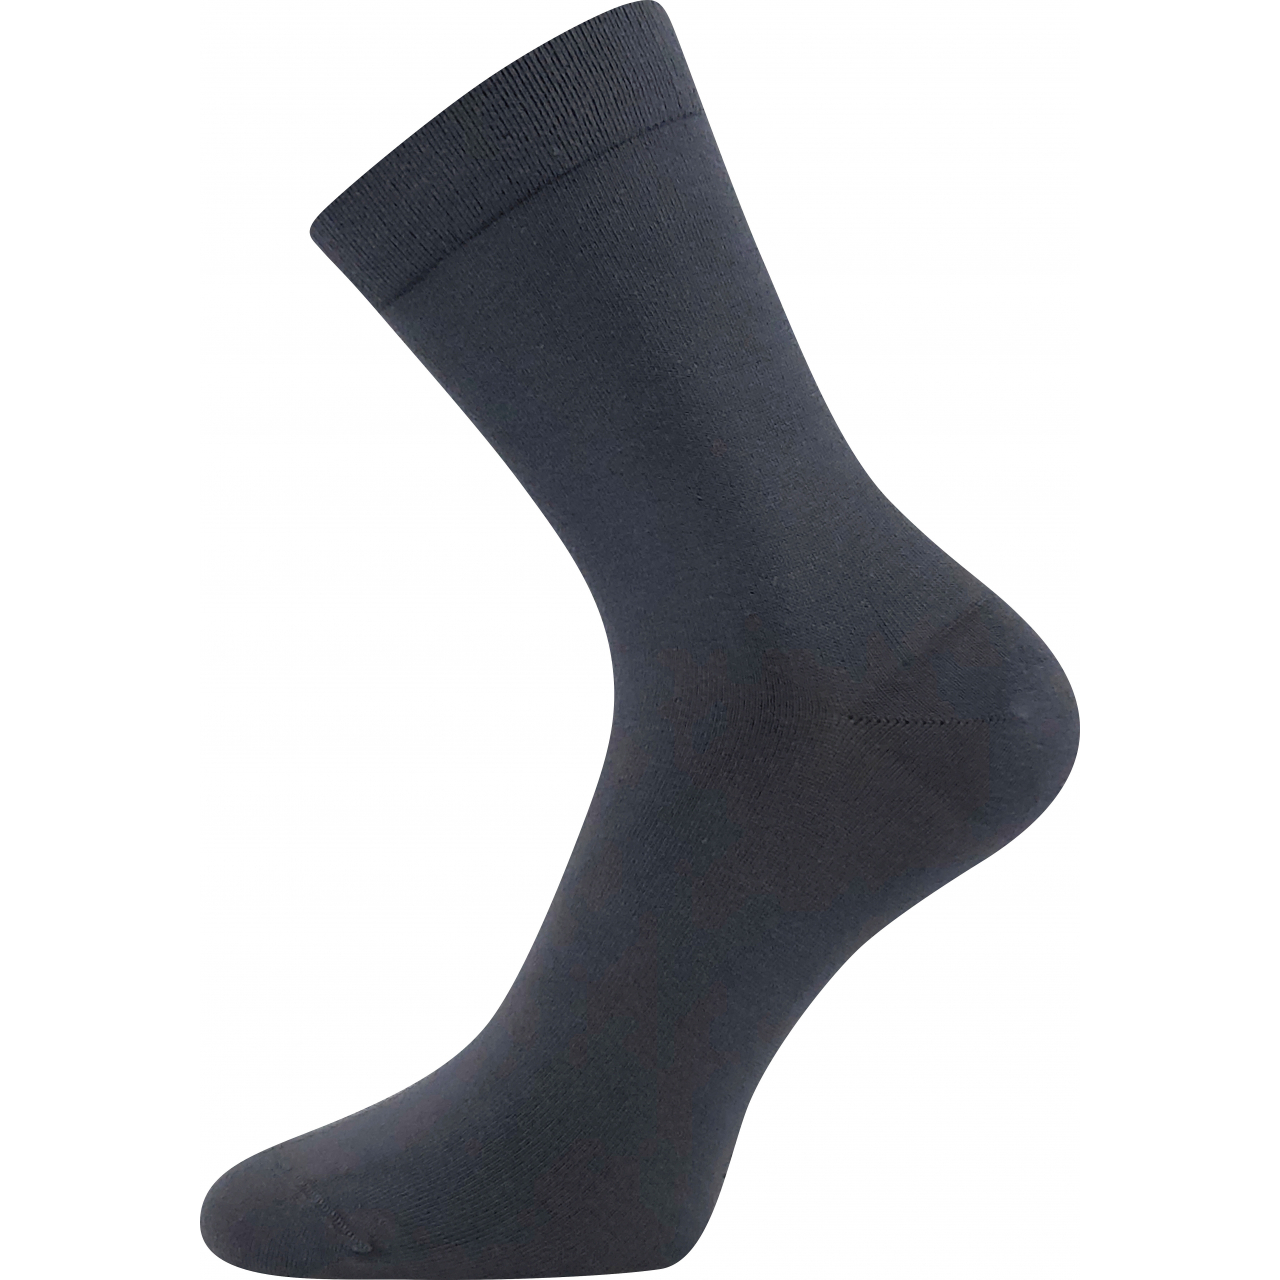 Ponožky unisex zdravotní Lonka Drbambik - tmavě šedé, 35-38